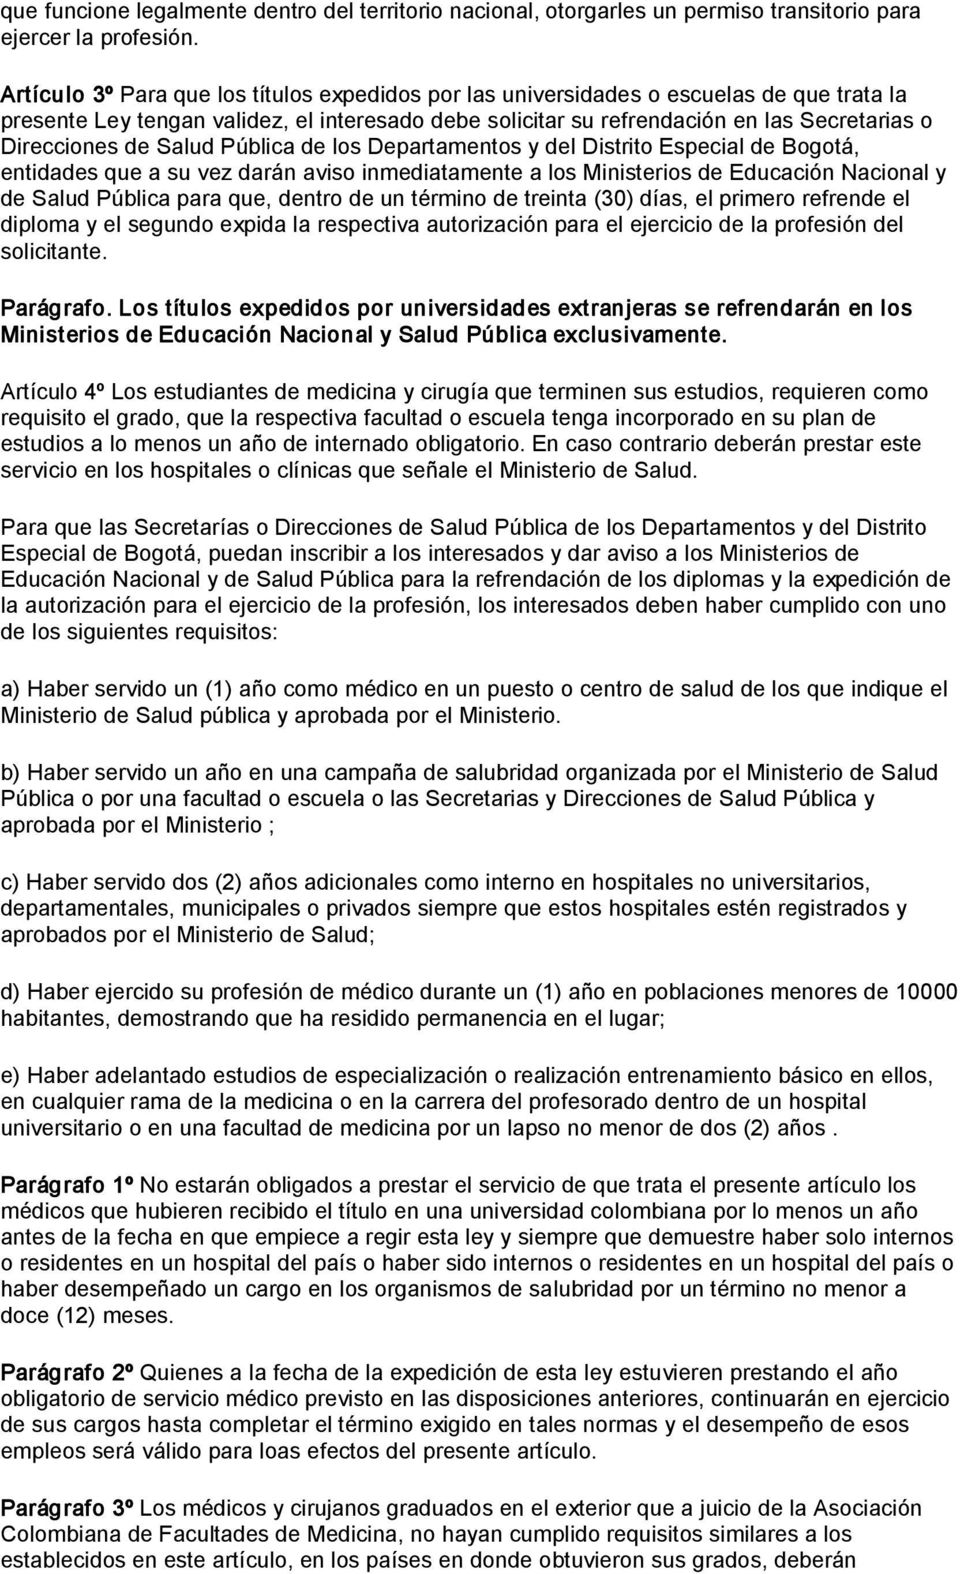 de Salud Pública de los Departamentos y del Distrito Especial de Bogotá, entidades que a su vez darán aviso inmediatamente a los Ministerios de Educación Nacional y de Salud Pública para que, dentro